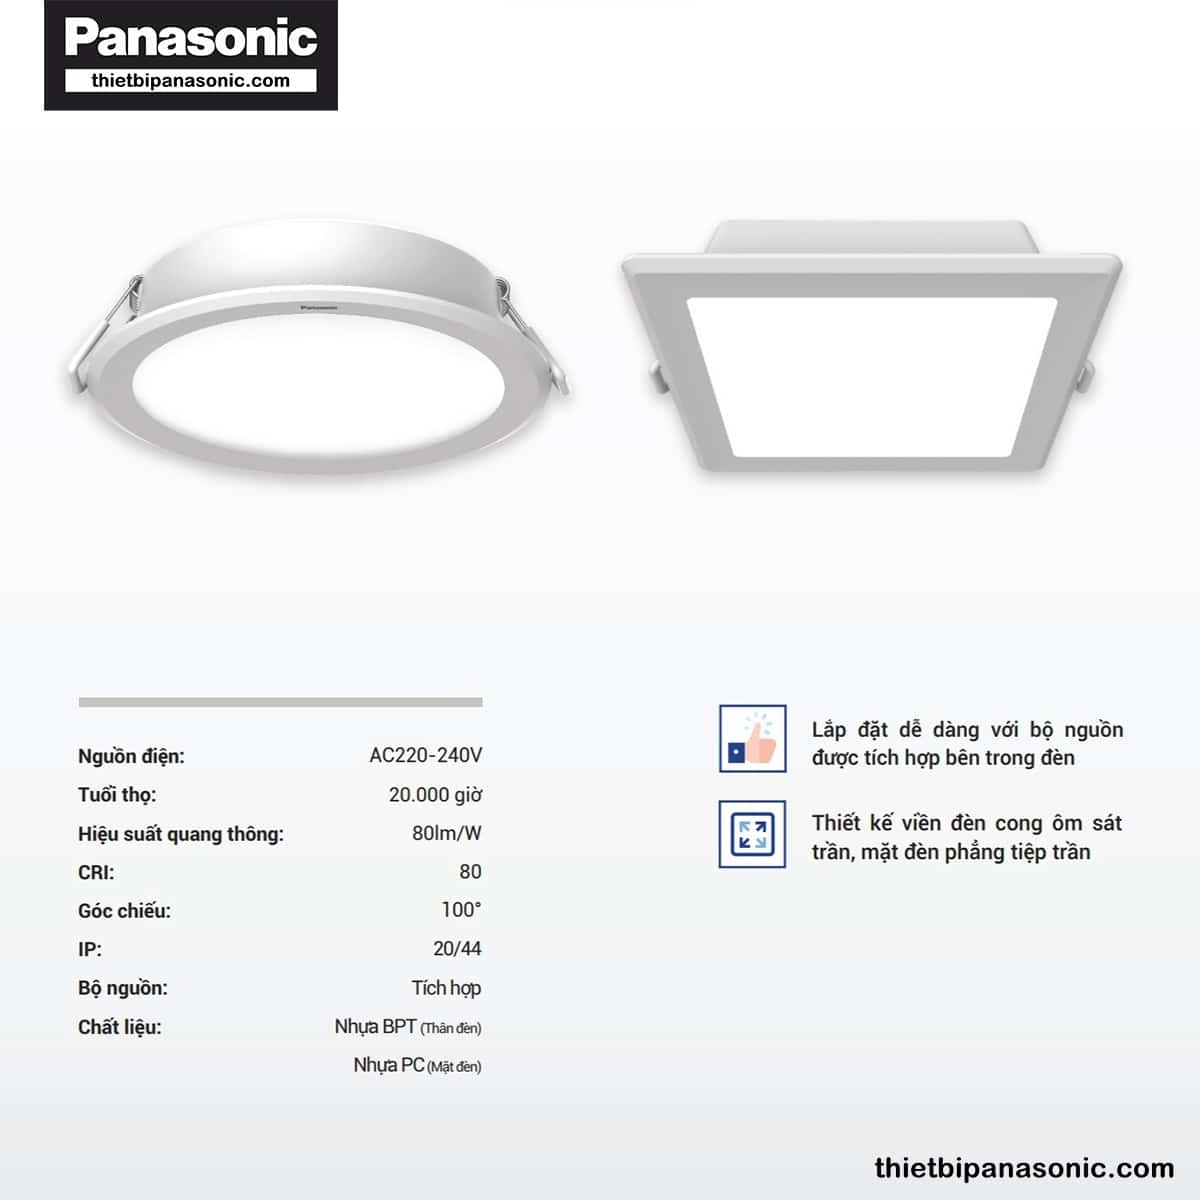 Đặc điểm nổi bật của Đèn âm trần DN 2G Panasonic 15W đơn sắc tròn | lỗ khoét Ø125mm, Ø150mm